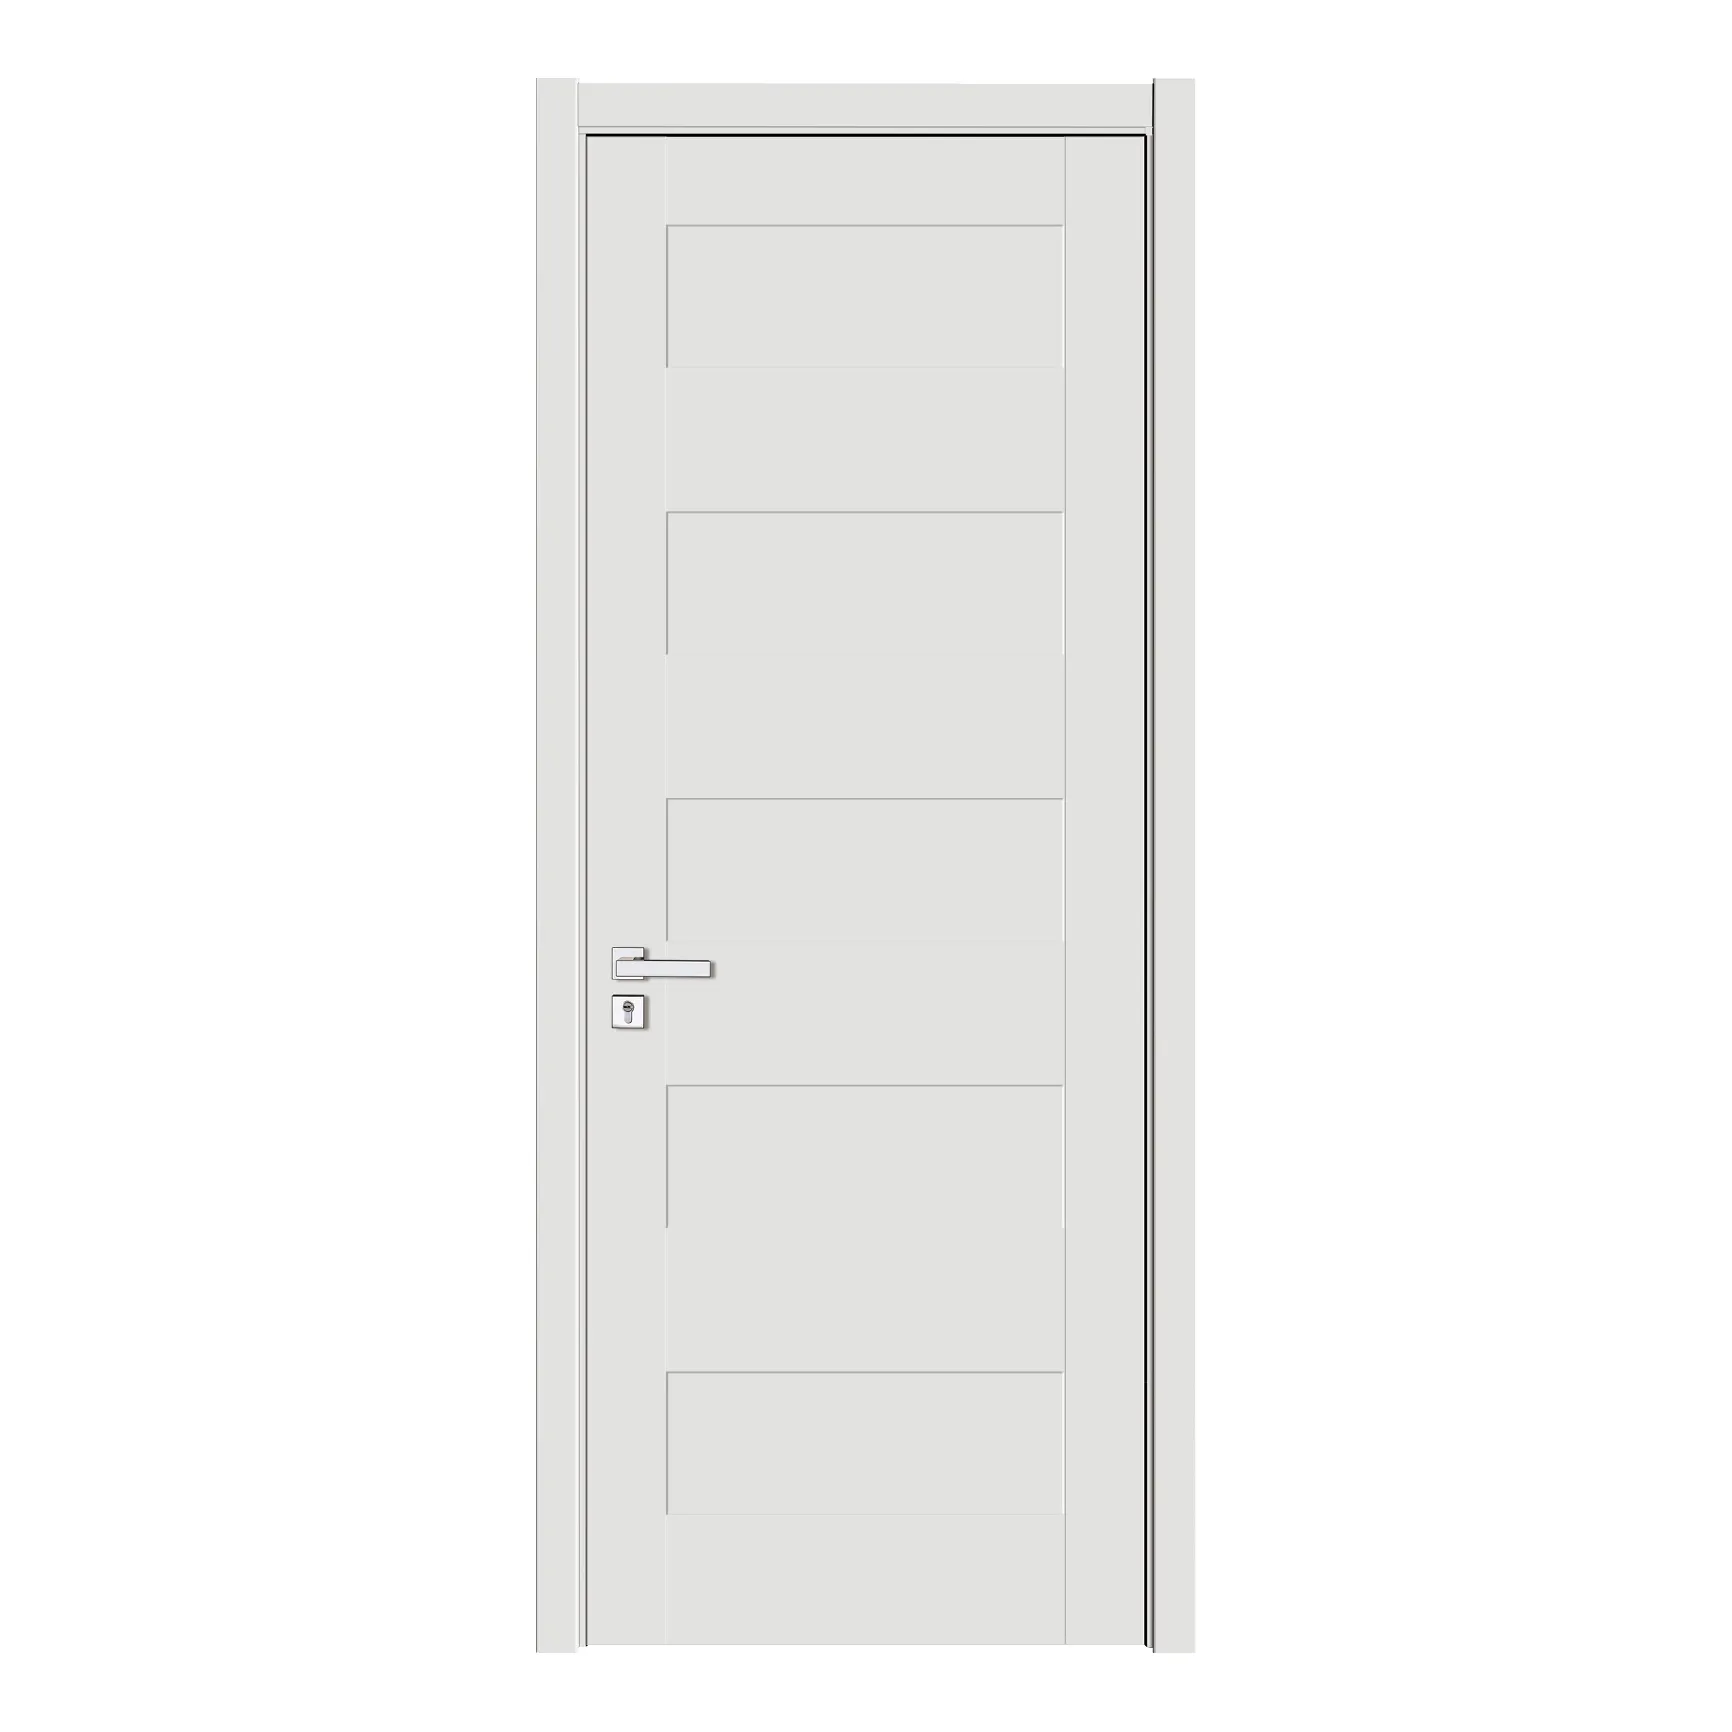 الطلب النشط باب خشبي ذو تصميم جديد الداخلية غرفة الصوت العزل لوح من الكلوريد متعدد الفينيل الباب لغرفة النوم